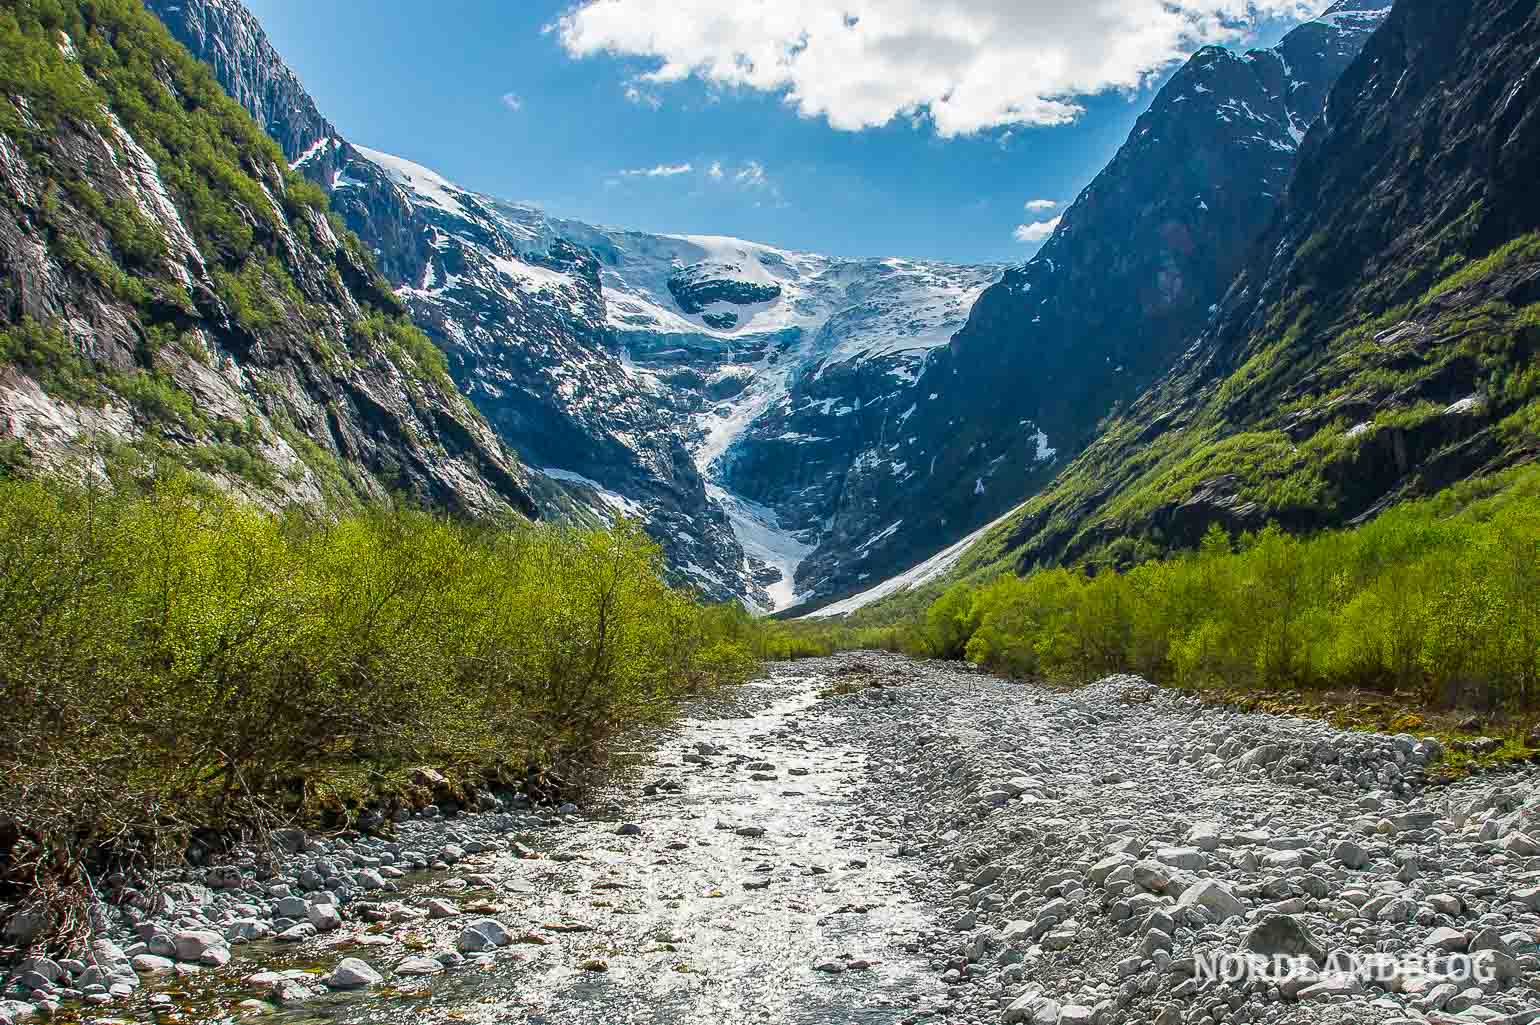 Gletscher Kjenndalsbreen im Lodalen am Nordfjord